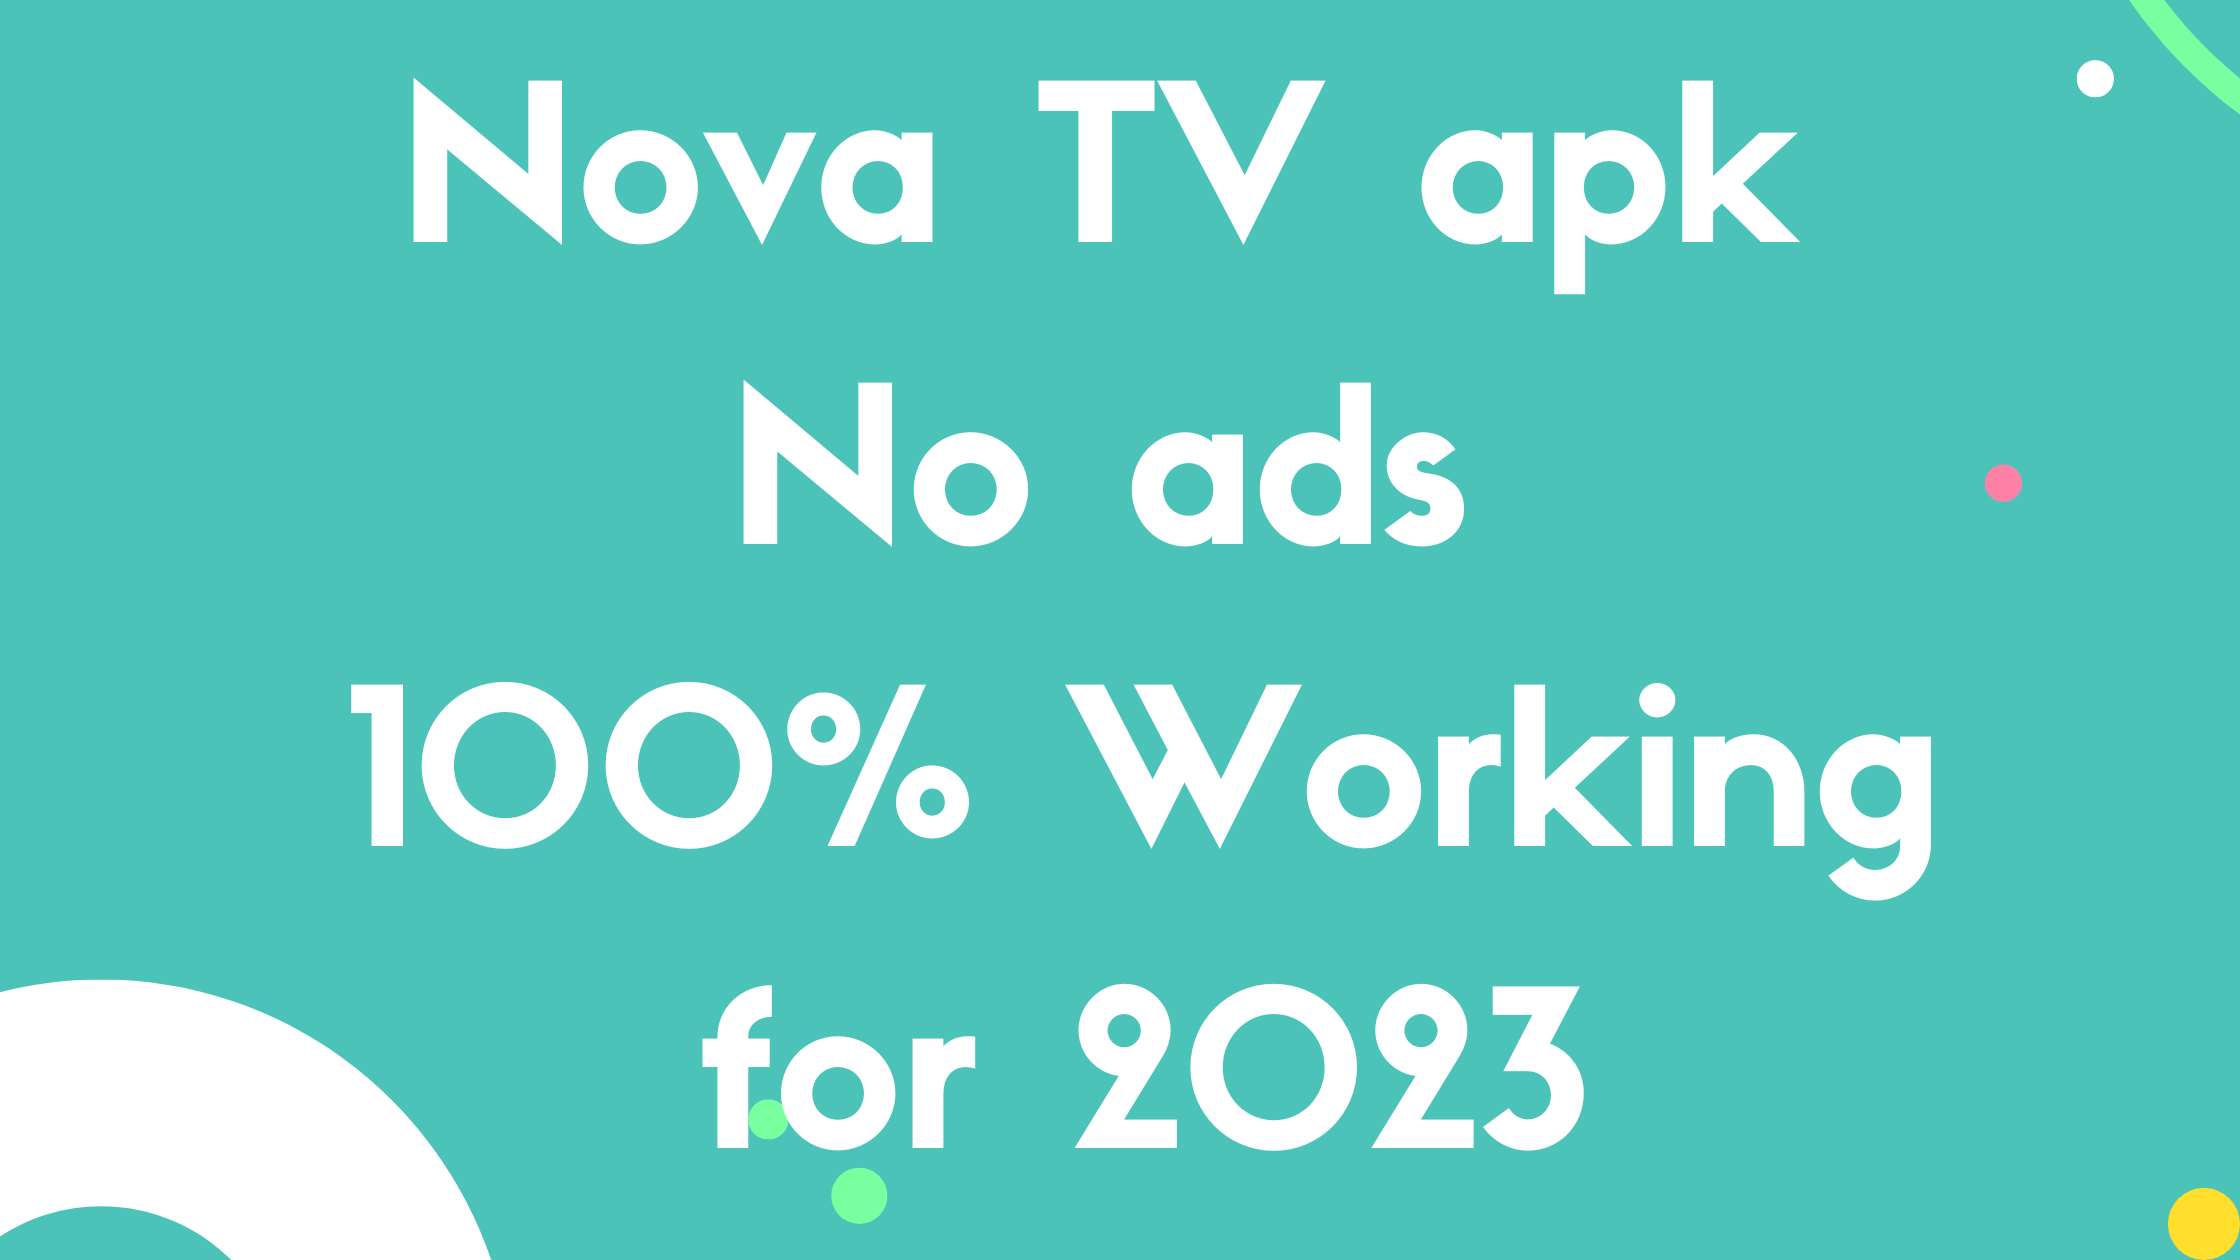 Nova TV apk No ads 100% Working for 2023